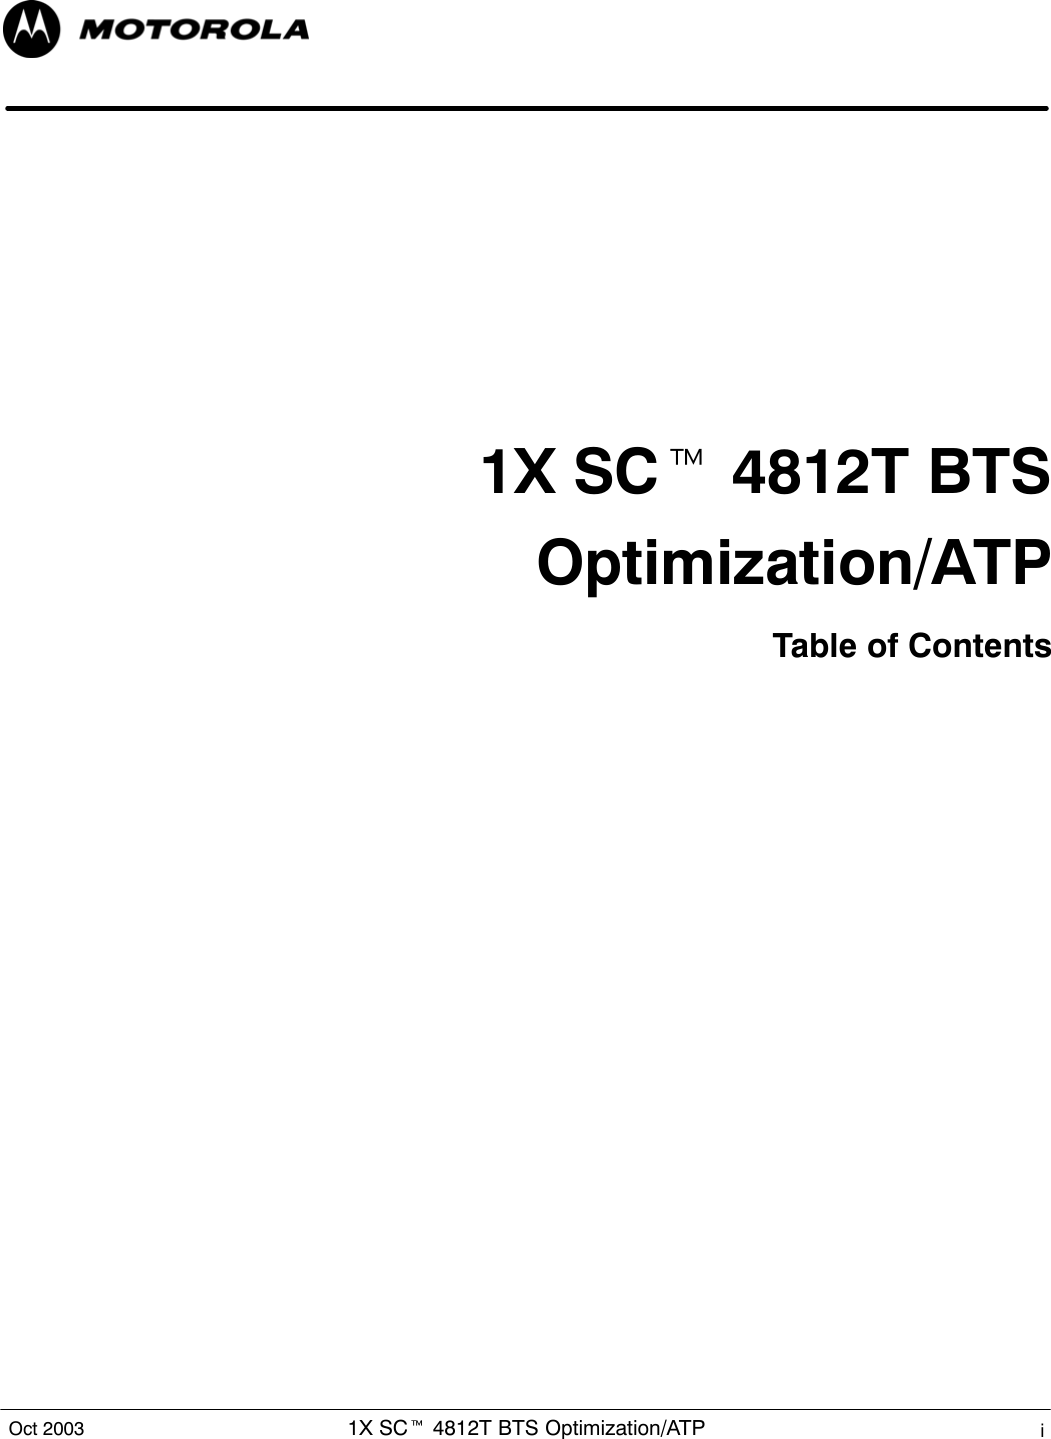 1X SCt 4812T BTS Optimization/ATP iOct 20031X SCt 4812T BTSOptimization/ATPTable of Contents...